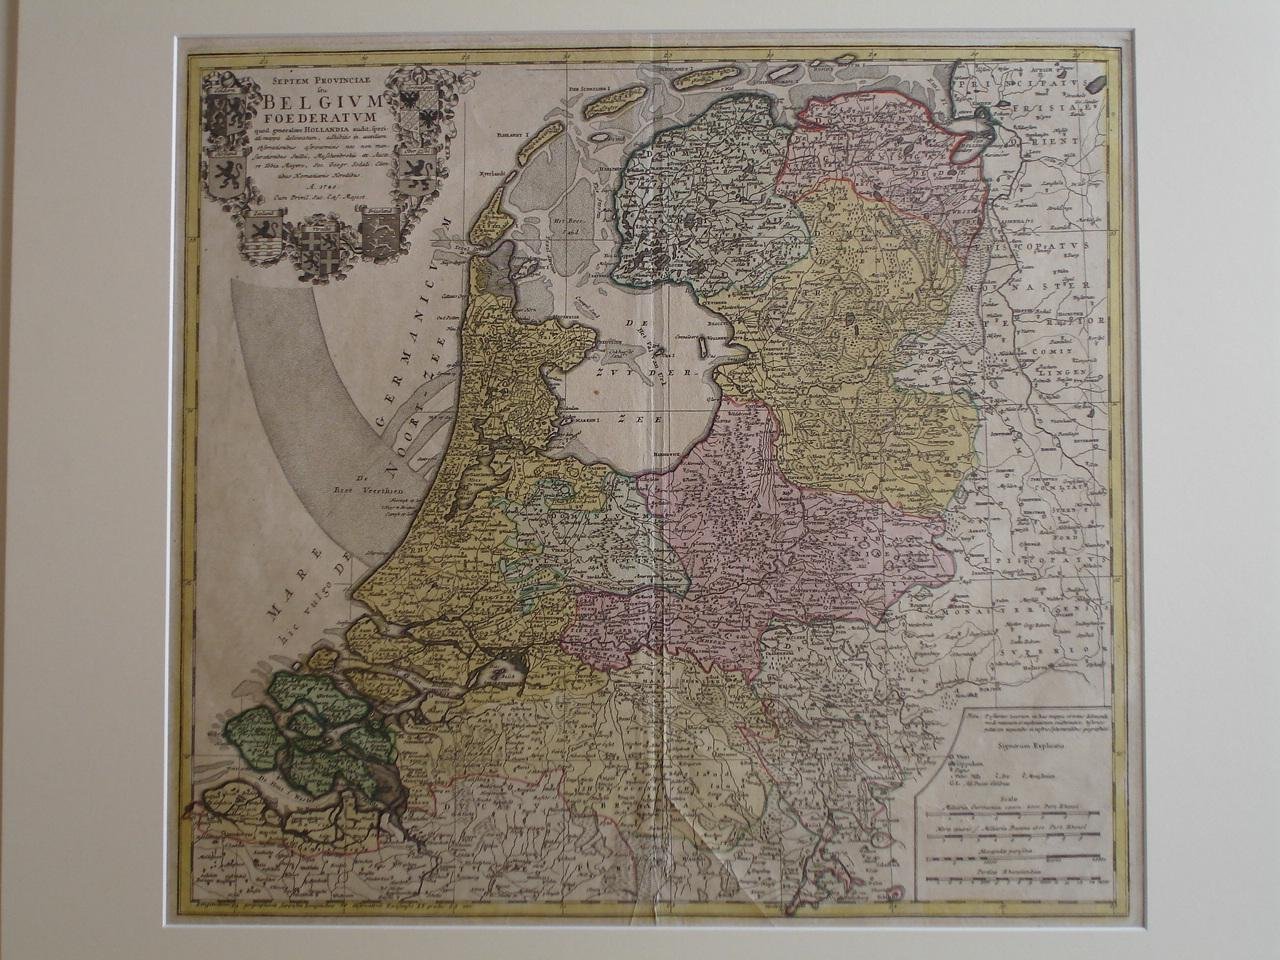 Nederland, kaart der Nederlanden / The Netherlands. - Belgium Foederatum.